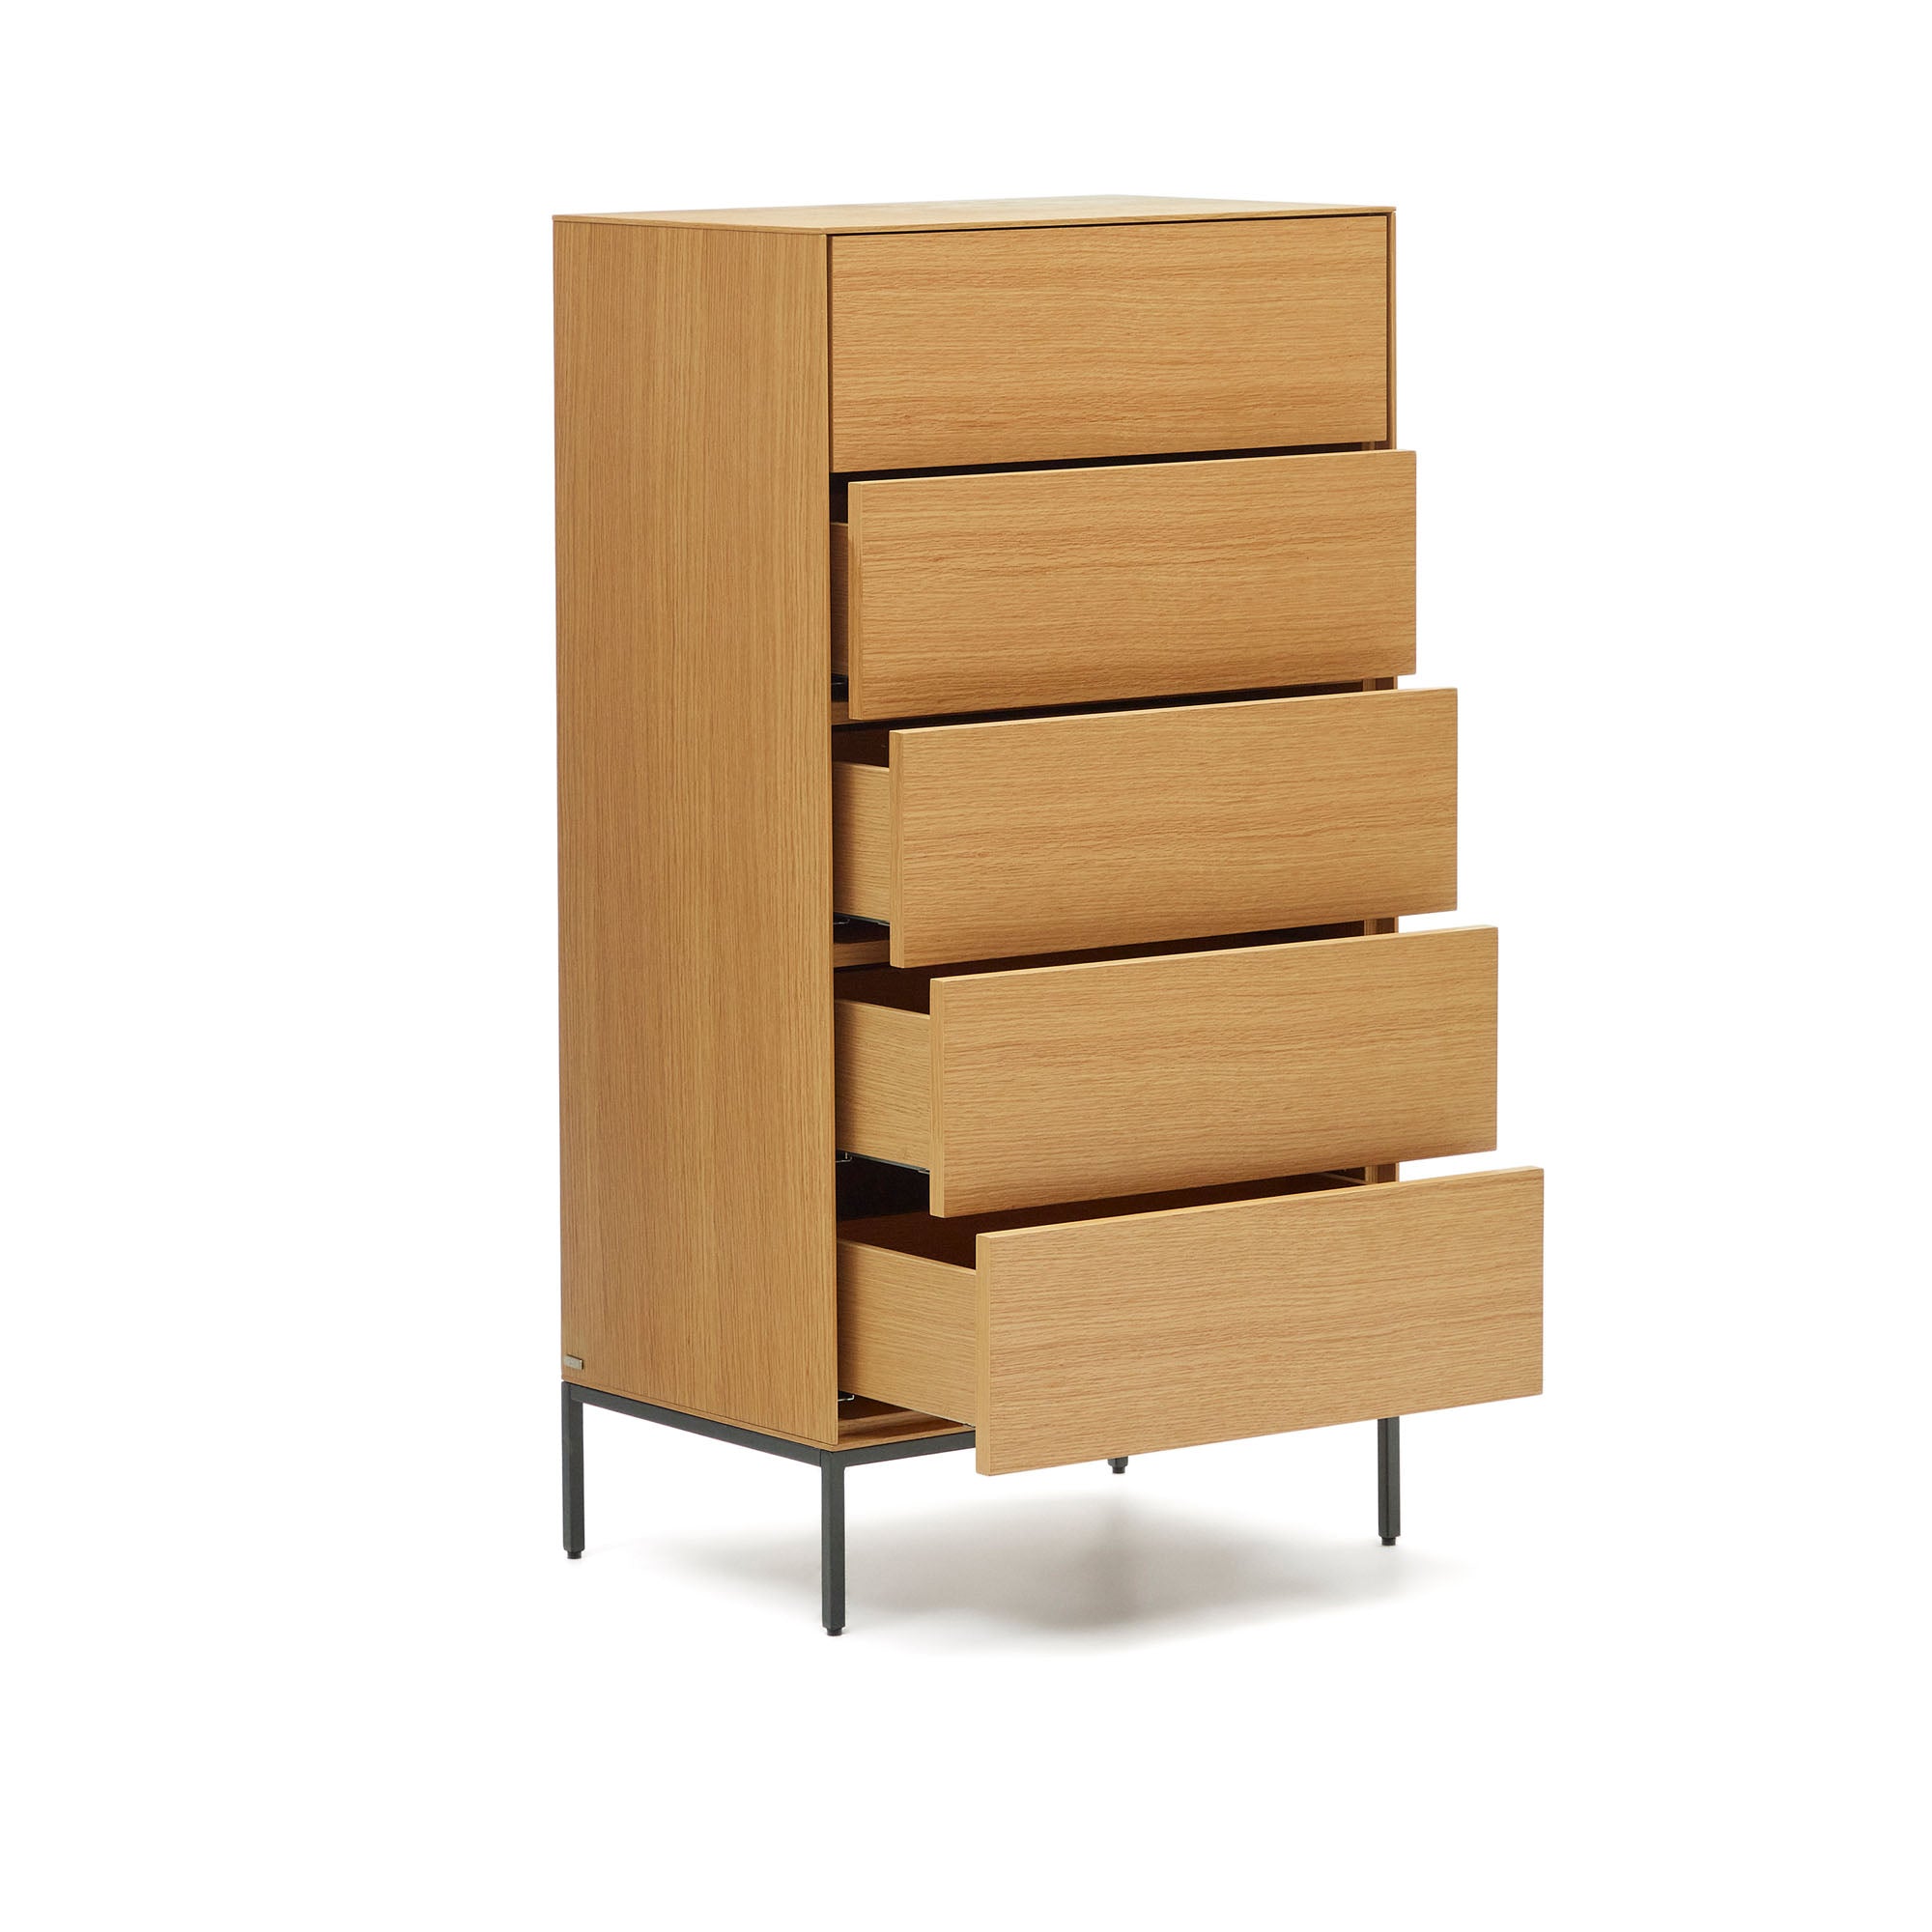 Vedrana 5 drawer chest of drawers in oak veneer with black steel legs, 60 x 114 cm